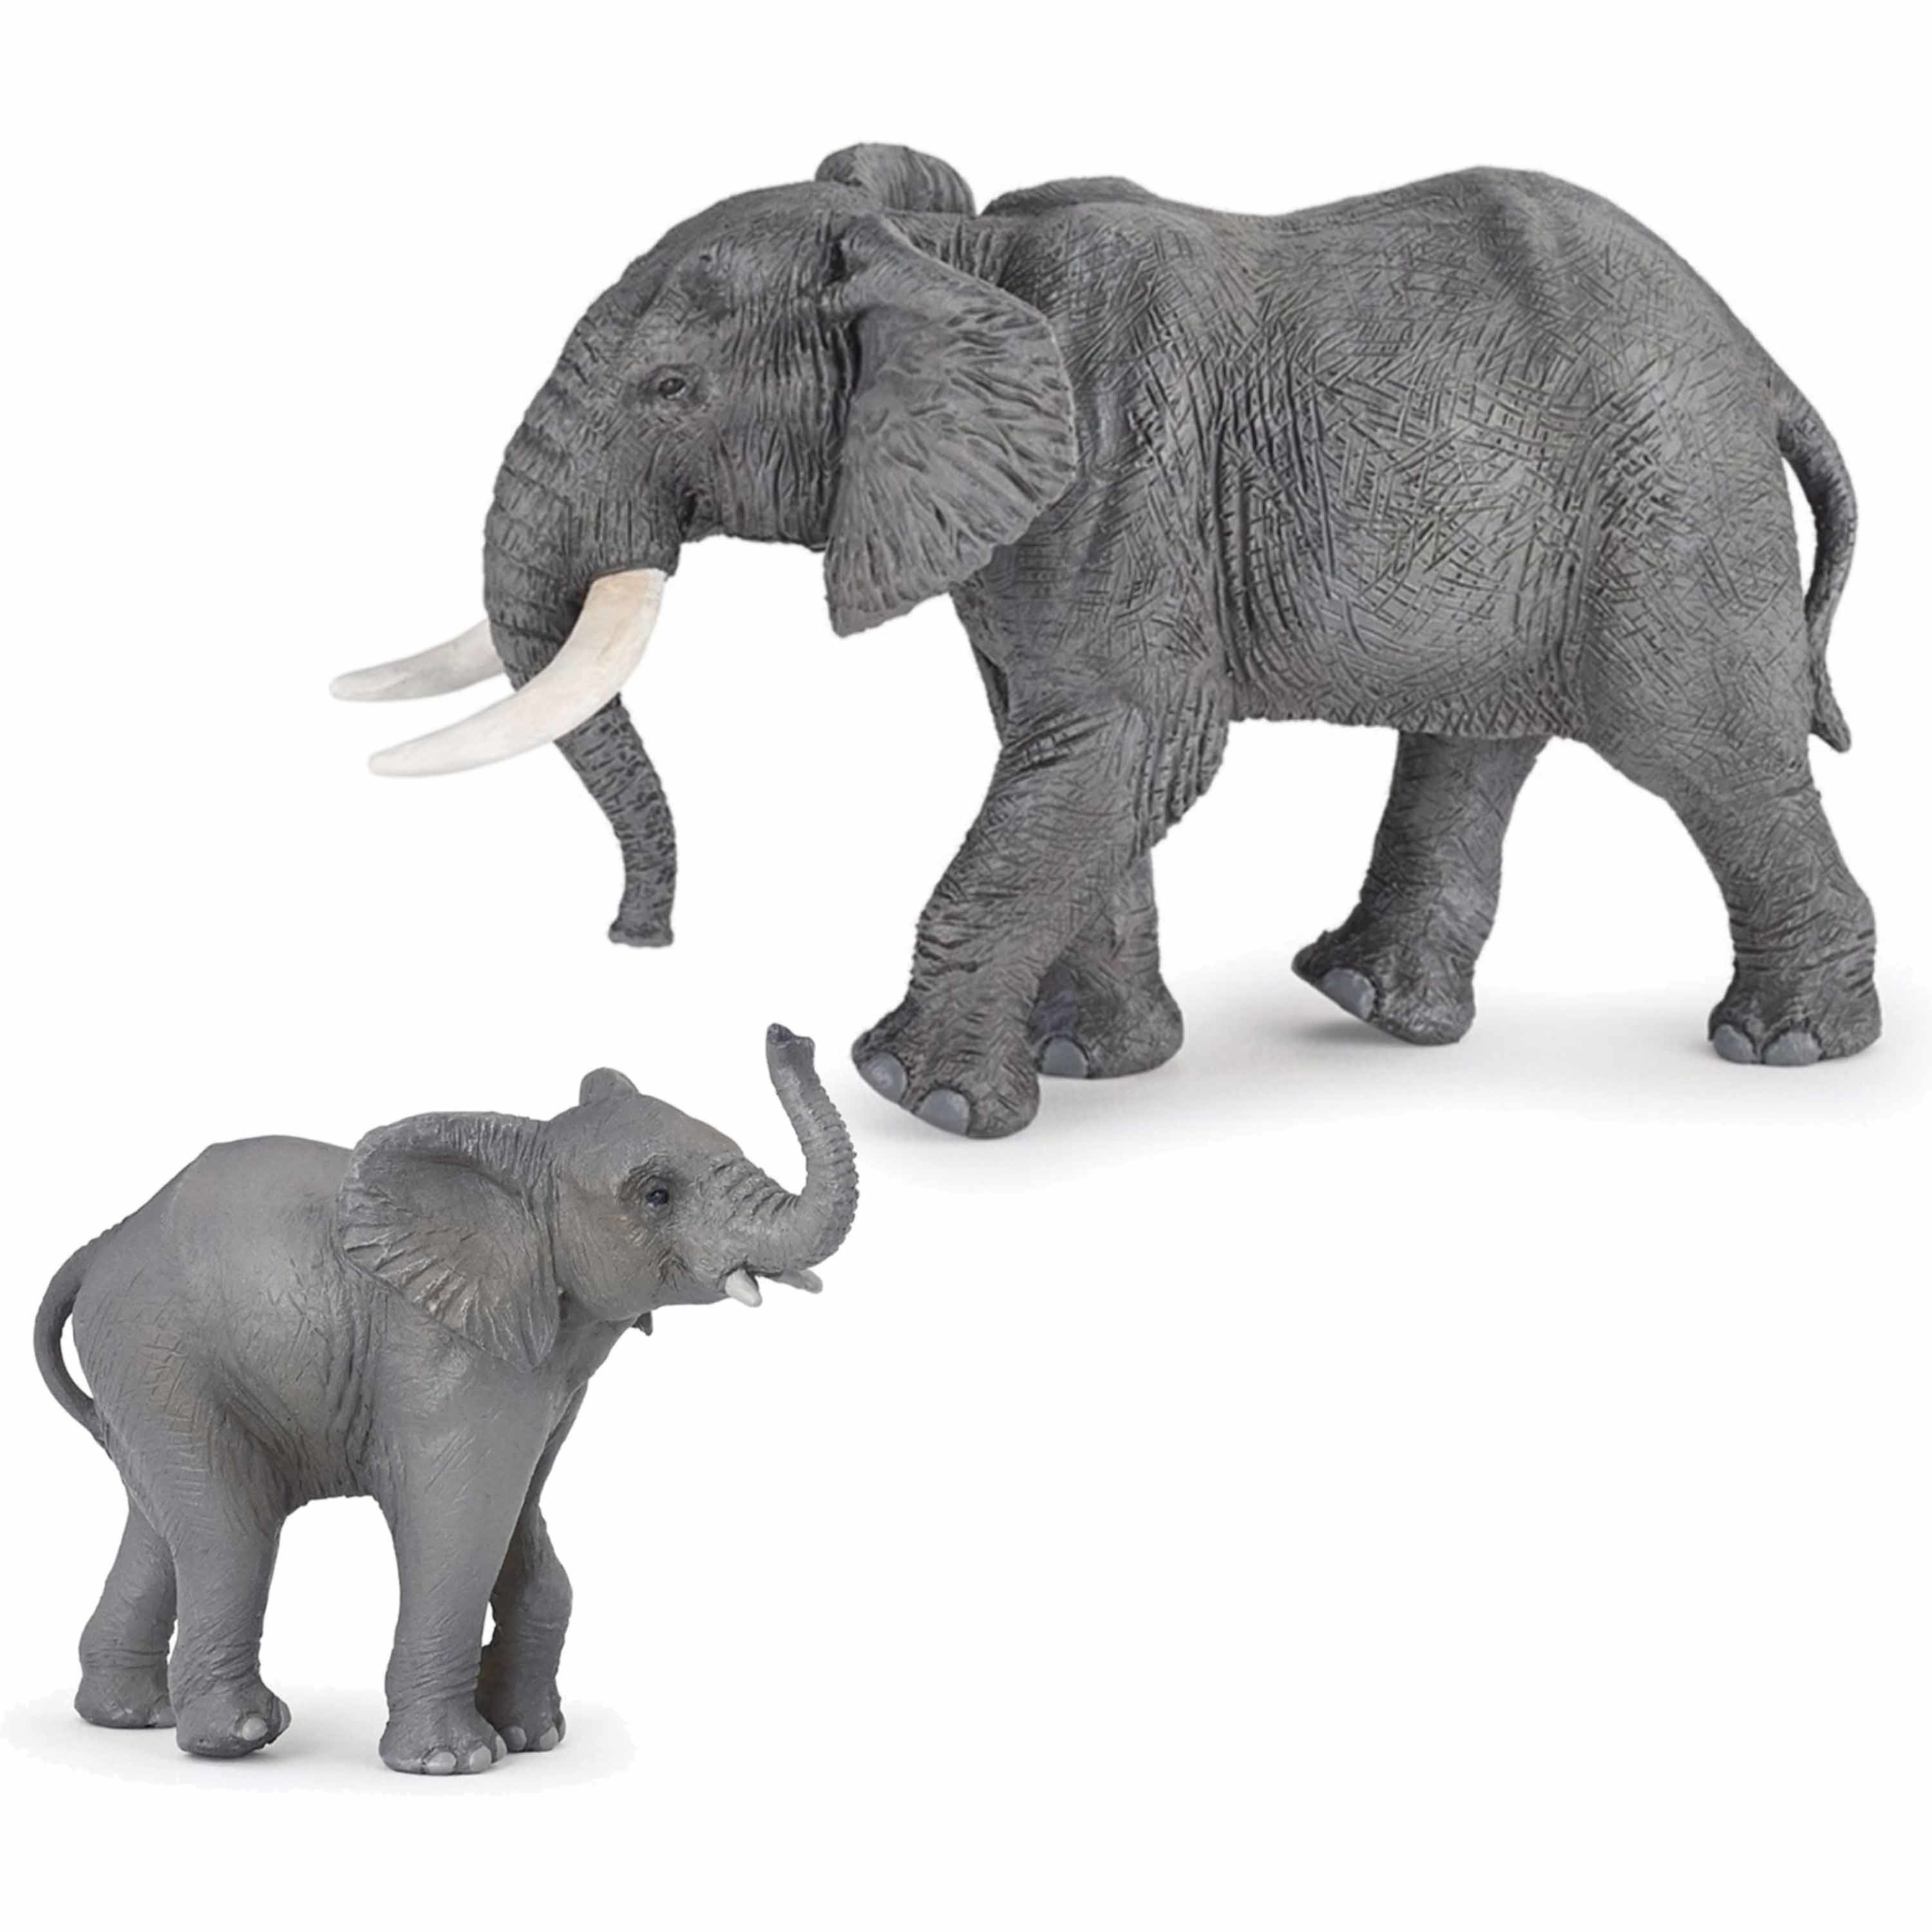 Plastic speelgoed figuren setje olifanten familie van moeder en kind